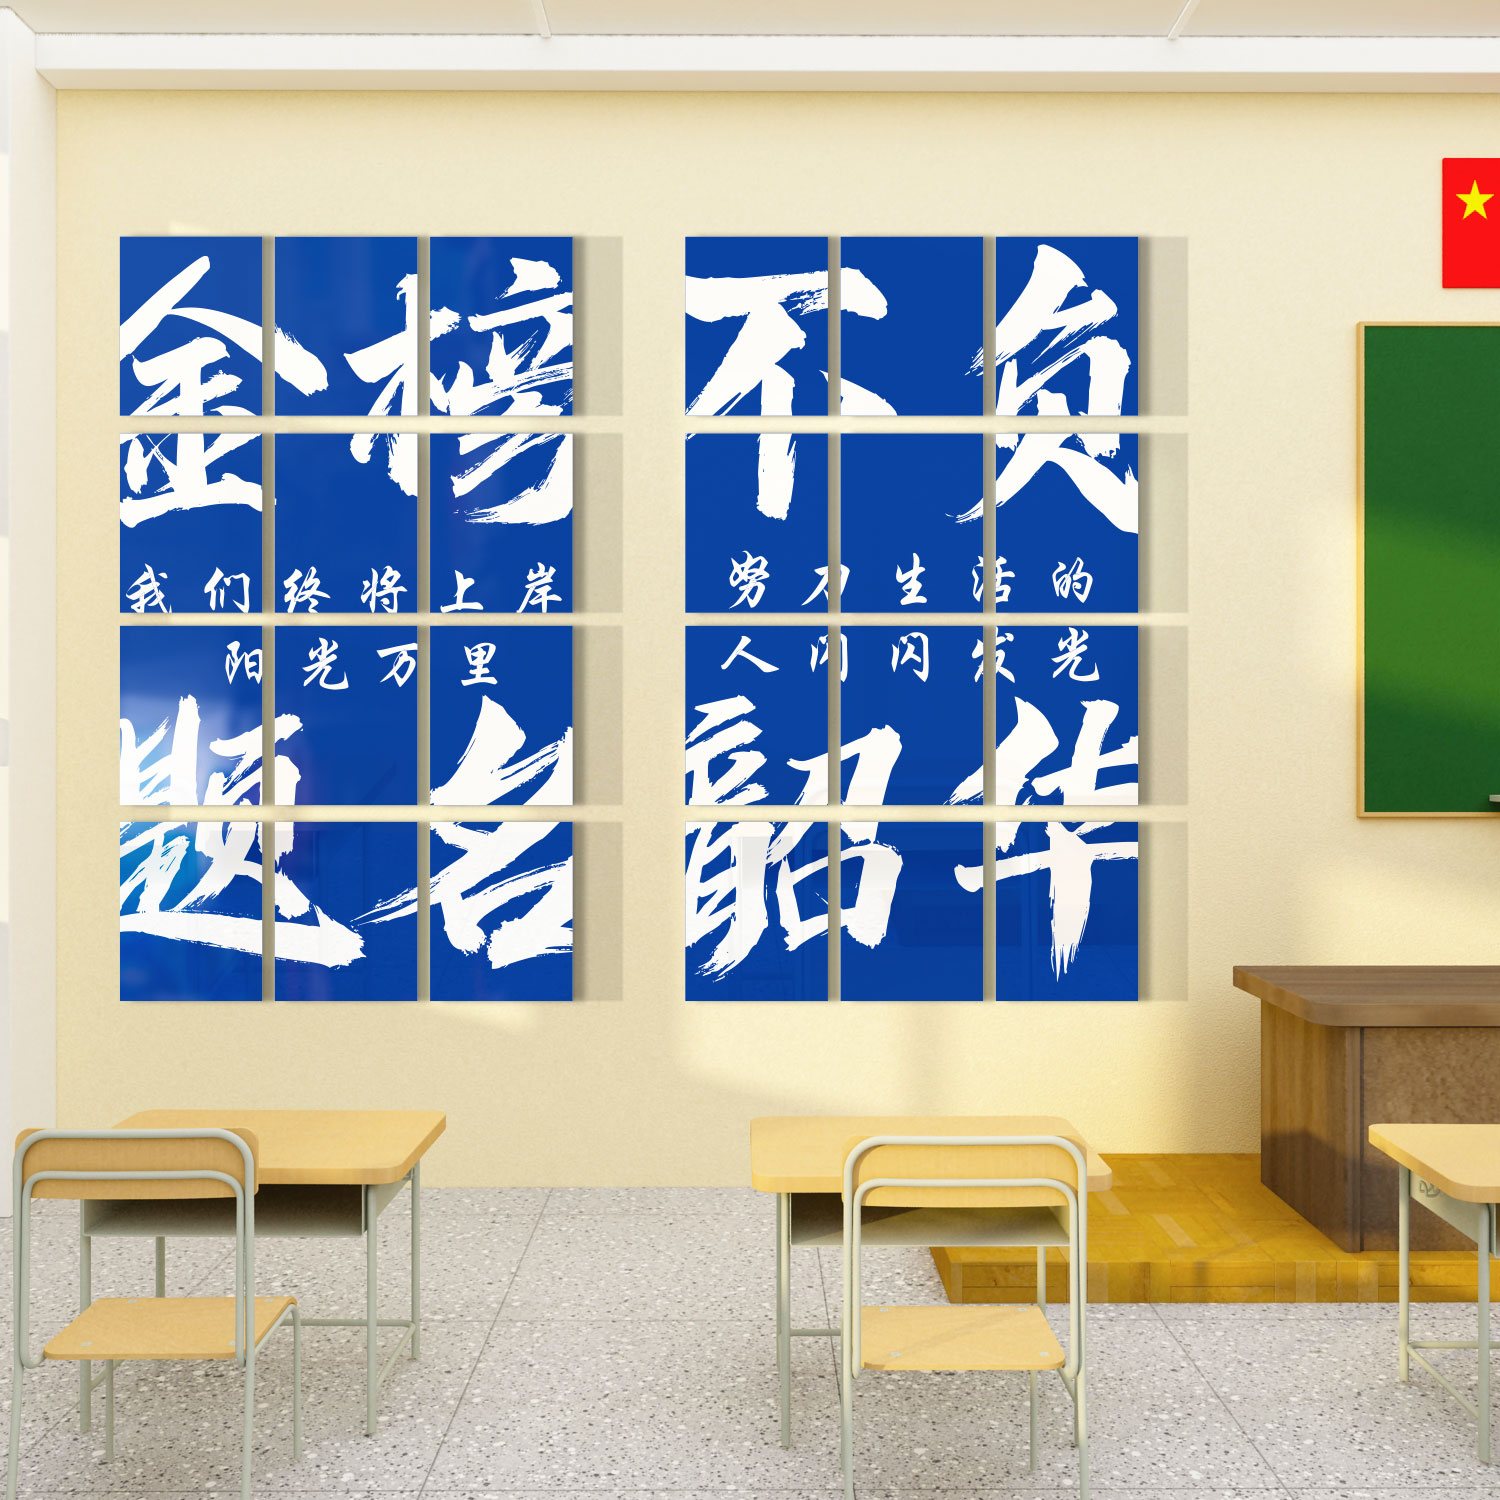 教室布置装饰班级文化墙贴纸初高中黑板报励志标语环创自习室创意 家居饰品 文化墙贴 原图主图